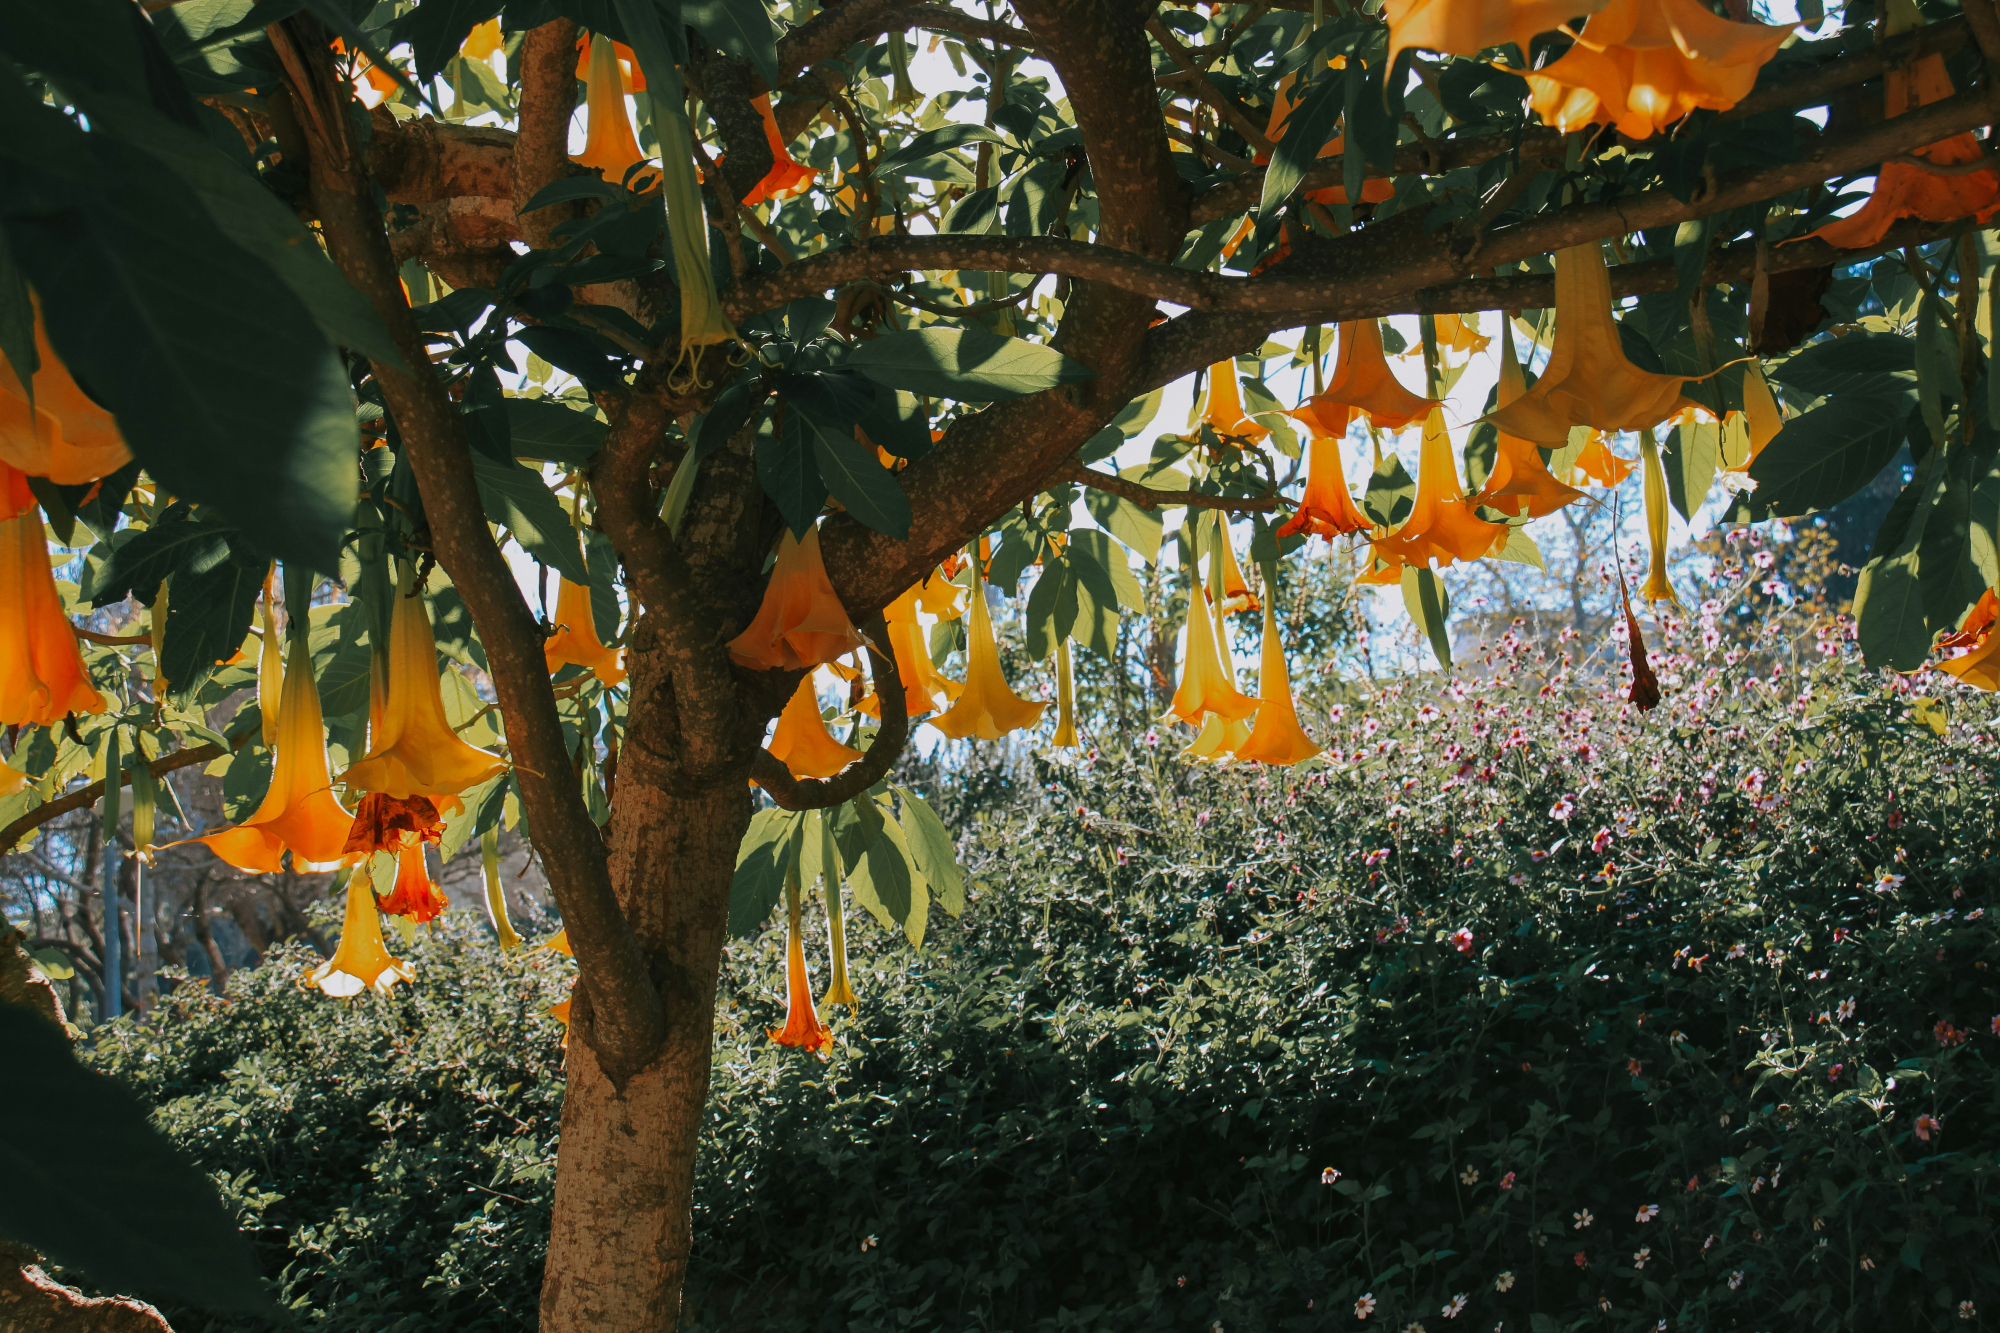 découvrez tout sur le brugmansia, une plante spectaculaire aux grandes fleurs en trompette et au parfum envoûtant. conseils de culture et d'entretien pour apprécier pleinement cette merveilleuse plante ornementale.